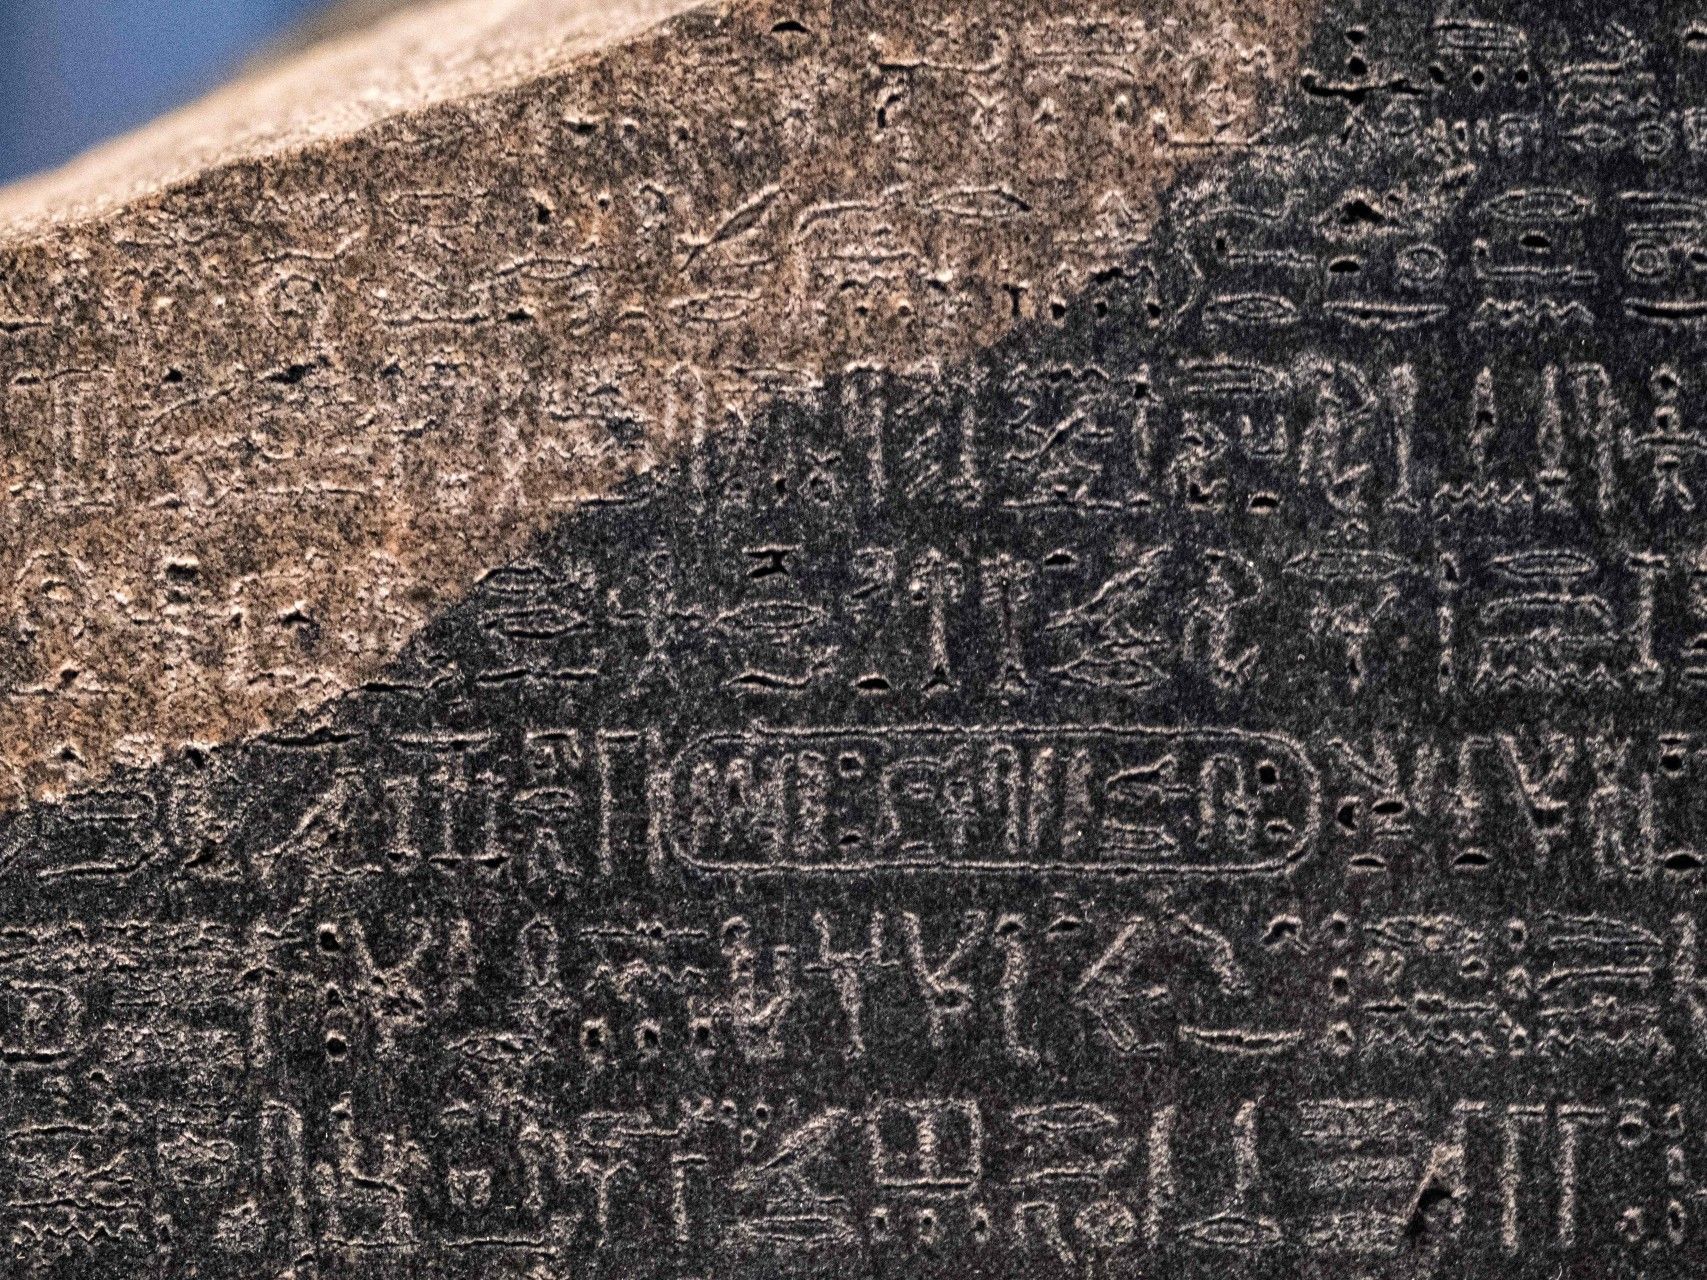 علماء آثار مصريون يطالبون باستعادة حجر رشيد من المتحف البريطاني